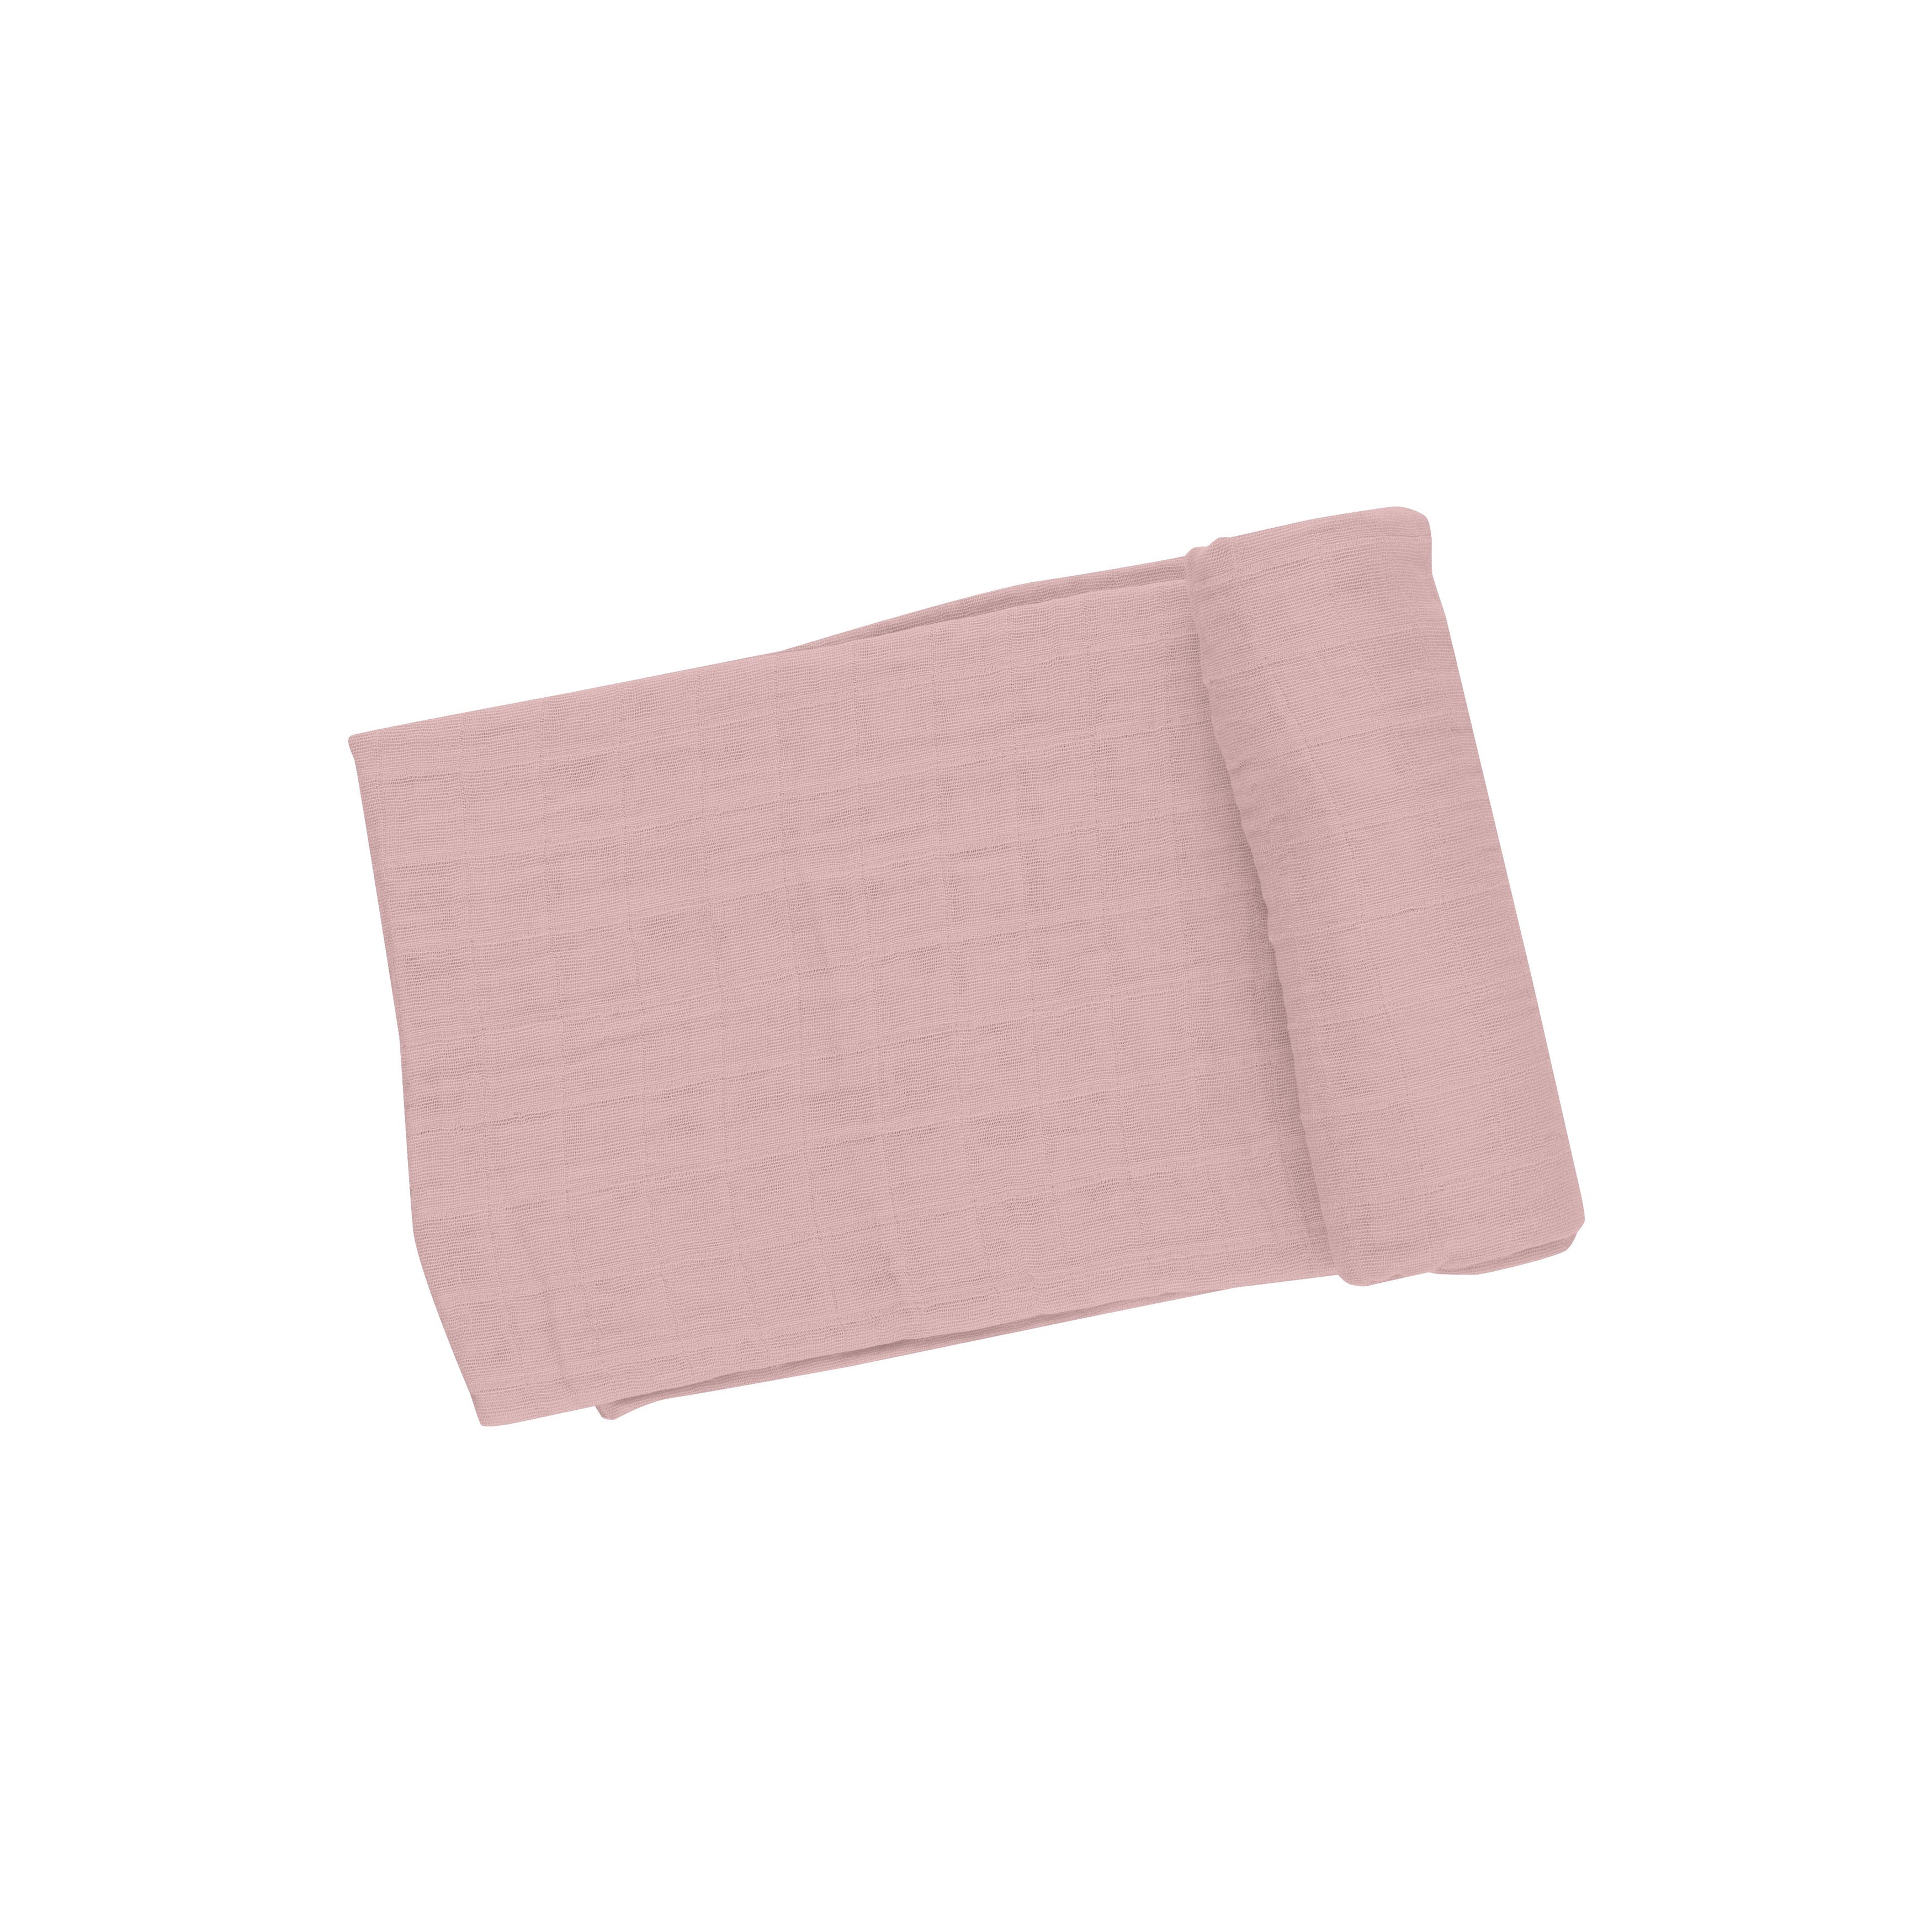 Swaddle Blanket - Dusty Pink Solid Muslin